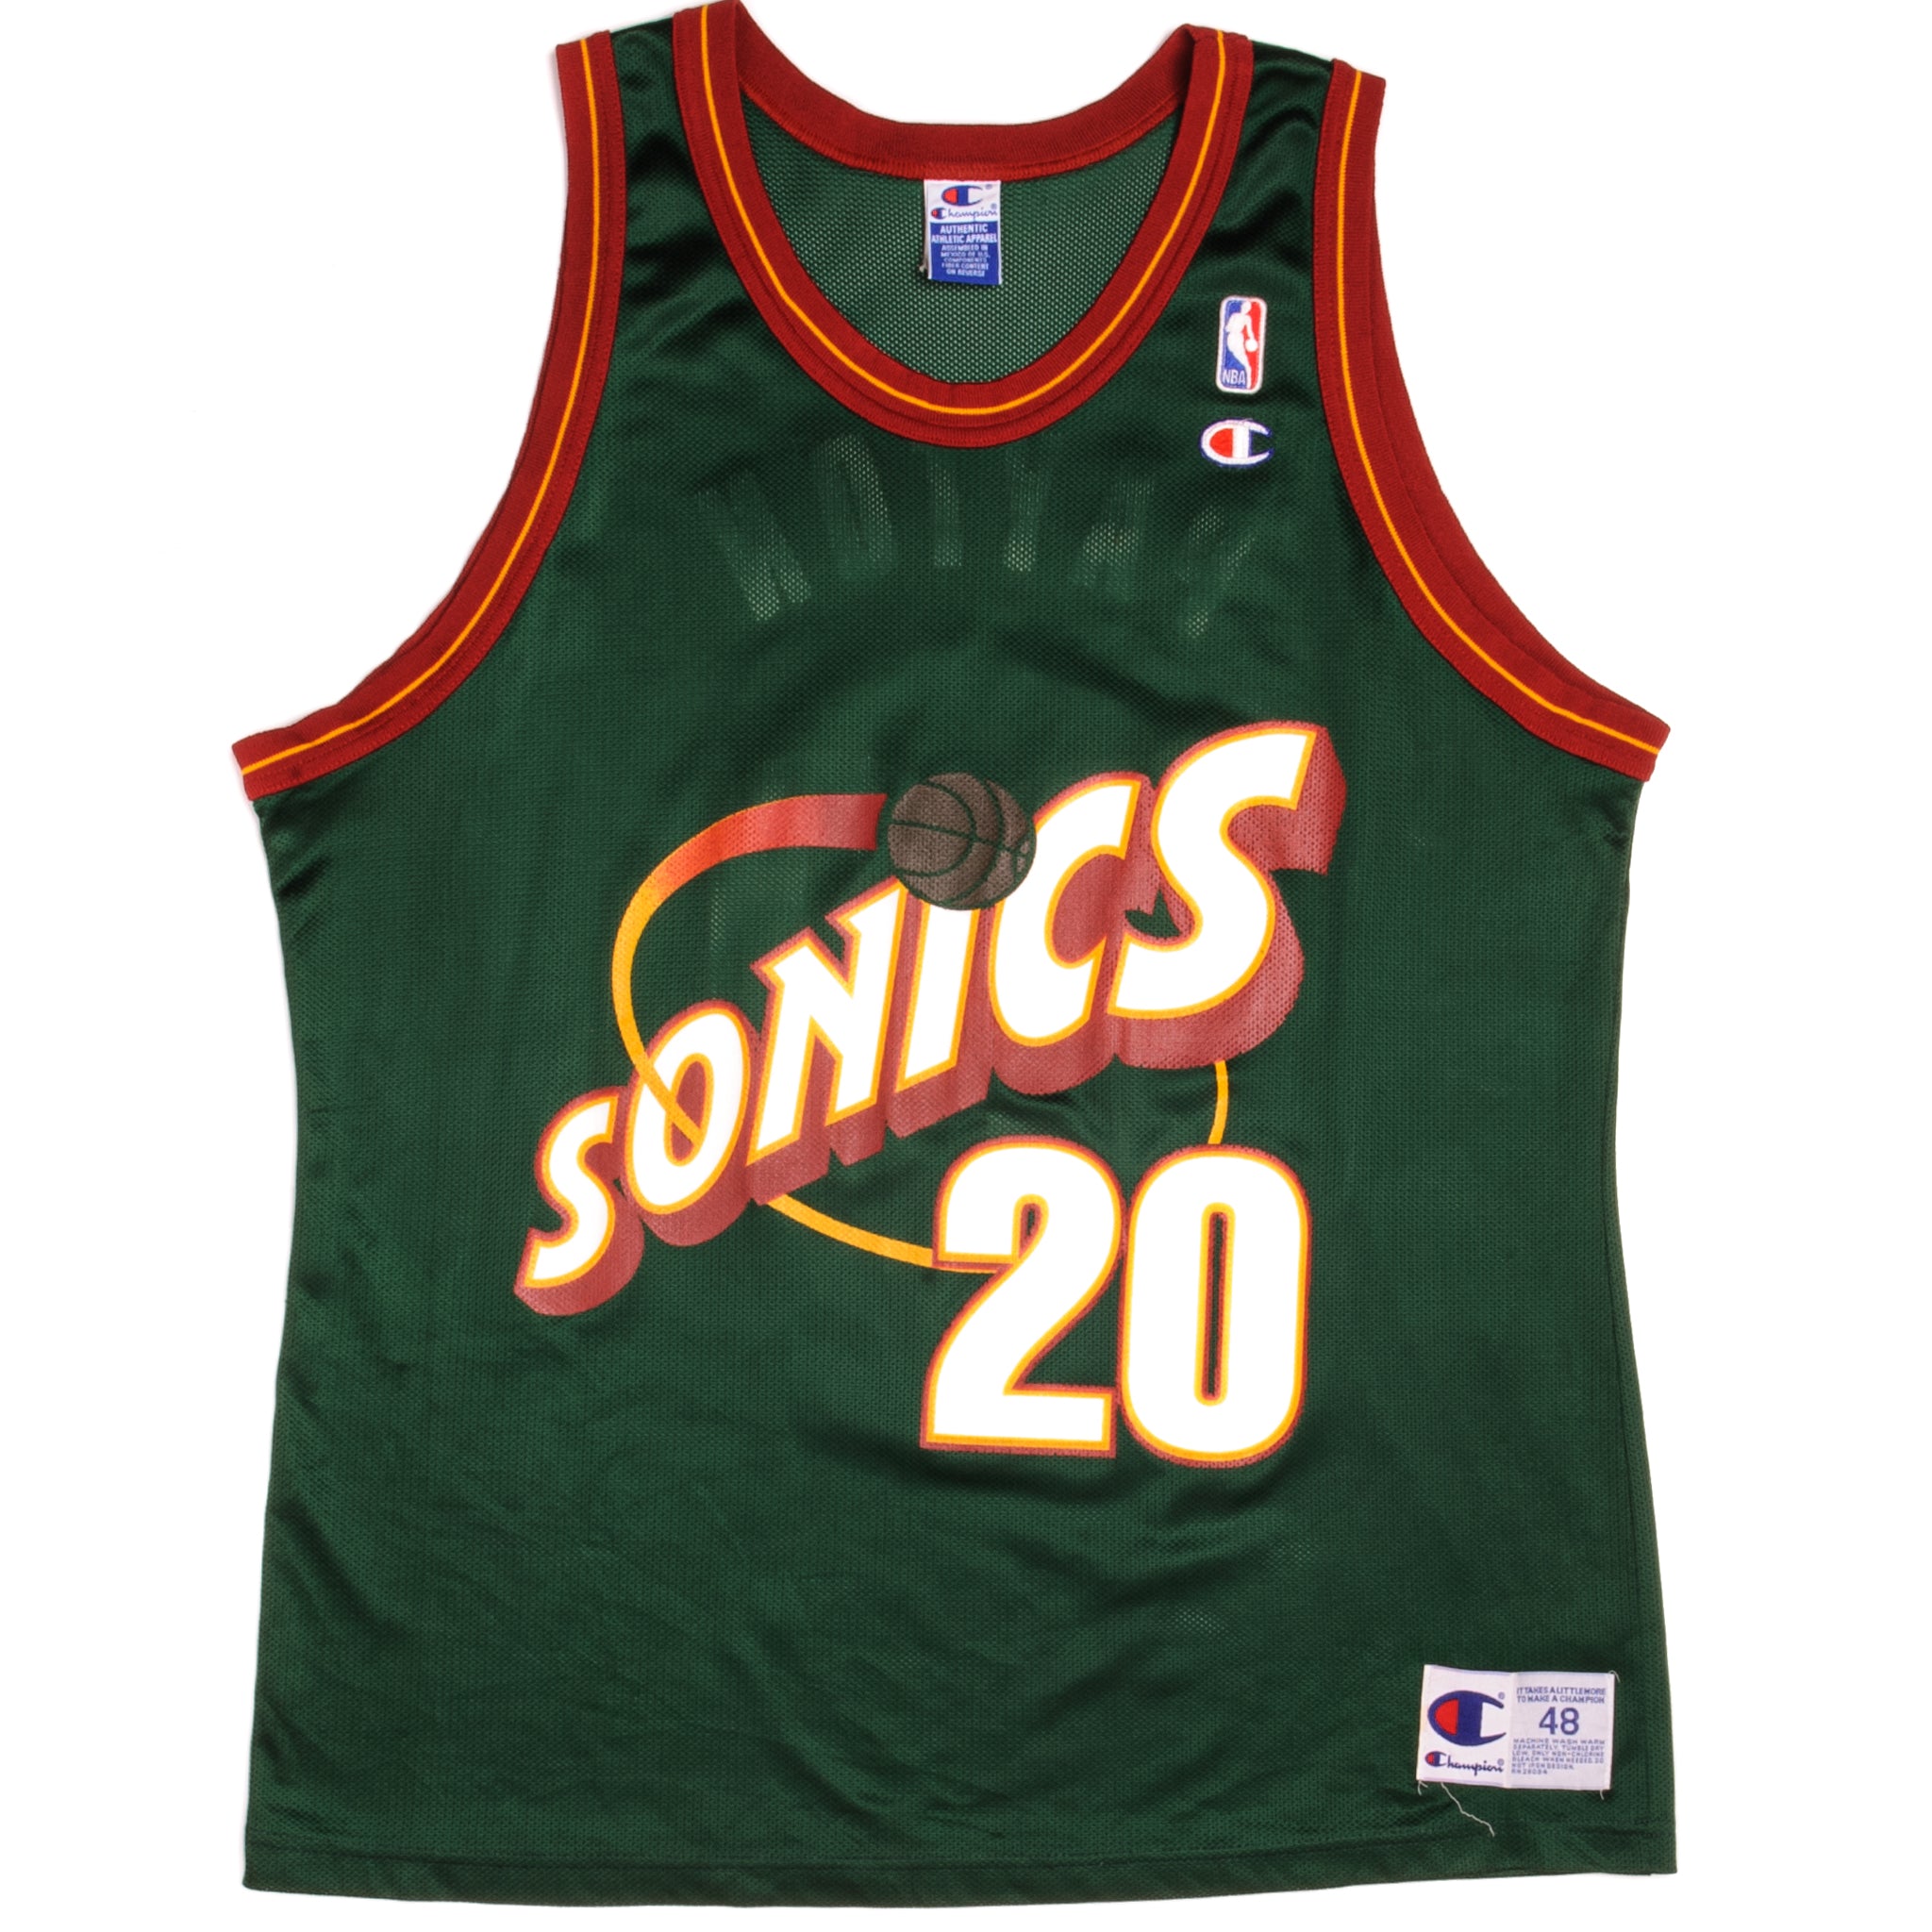 1995-2001 Seattle SuperSonics Payton 20 Road Jersey